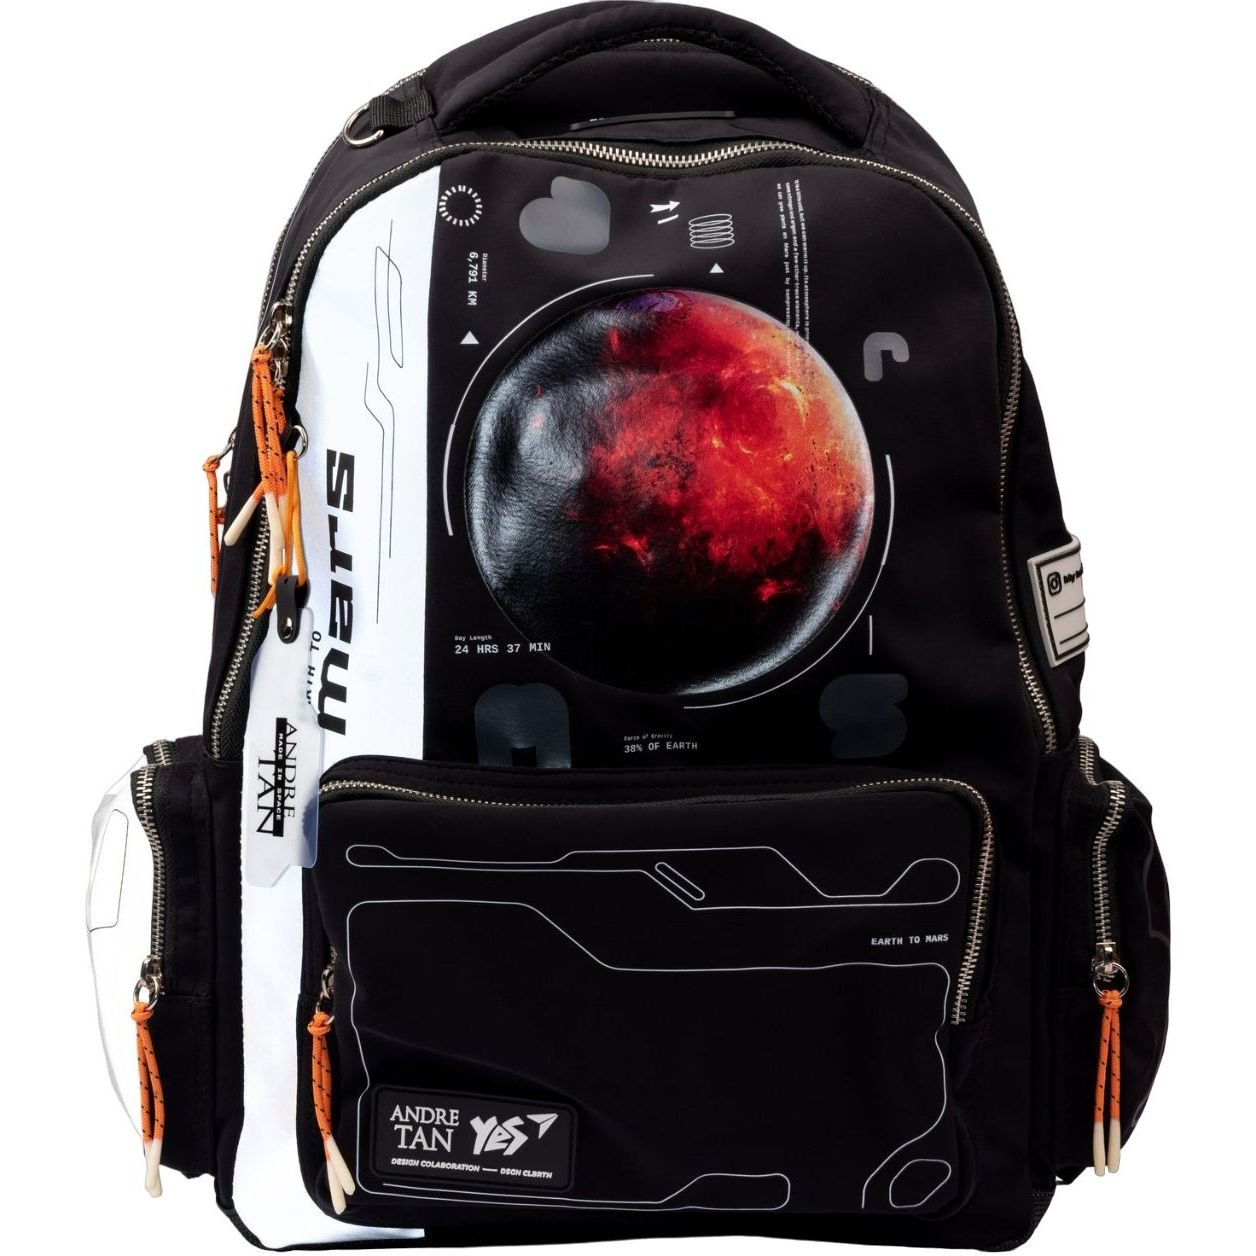 Фото - Шкільний рюкзак (ранець) Yes Рюкзак  T-131 Andre Tan Space black light, сірий з чорним  (559050)